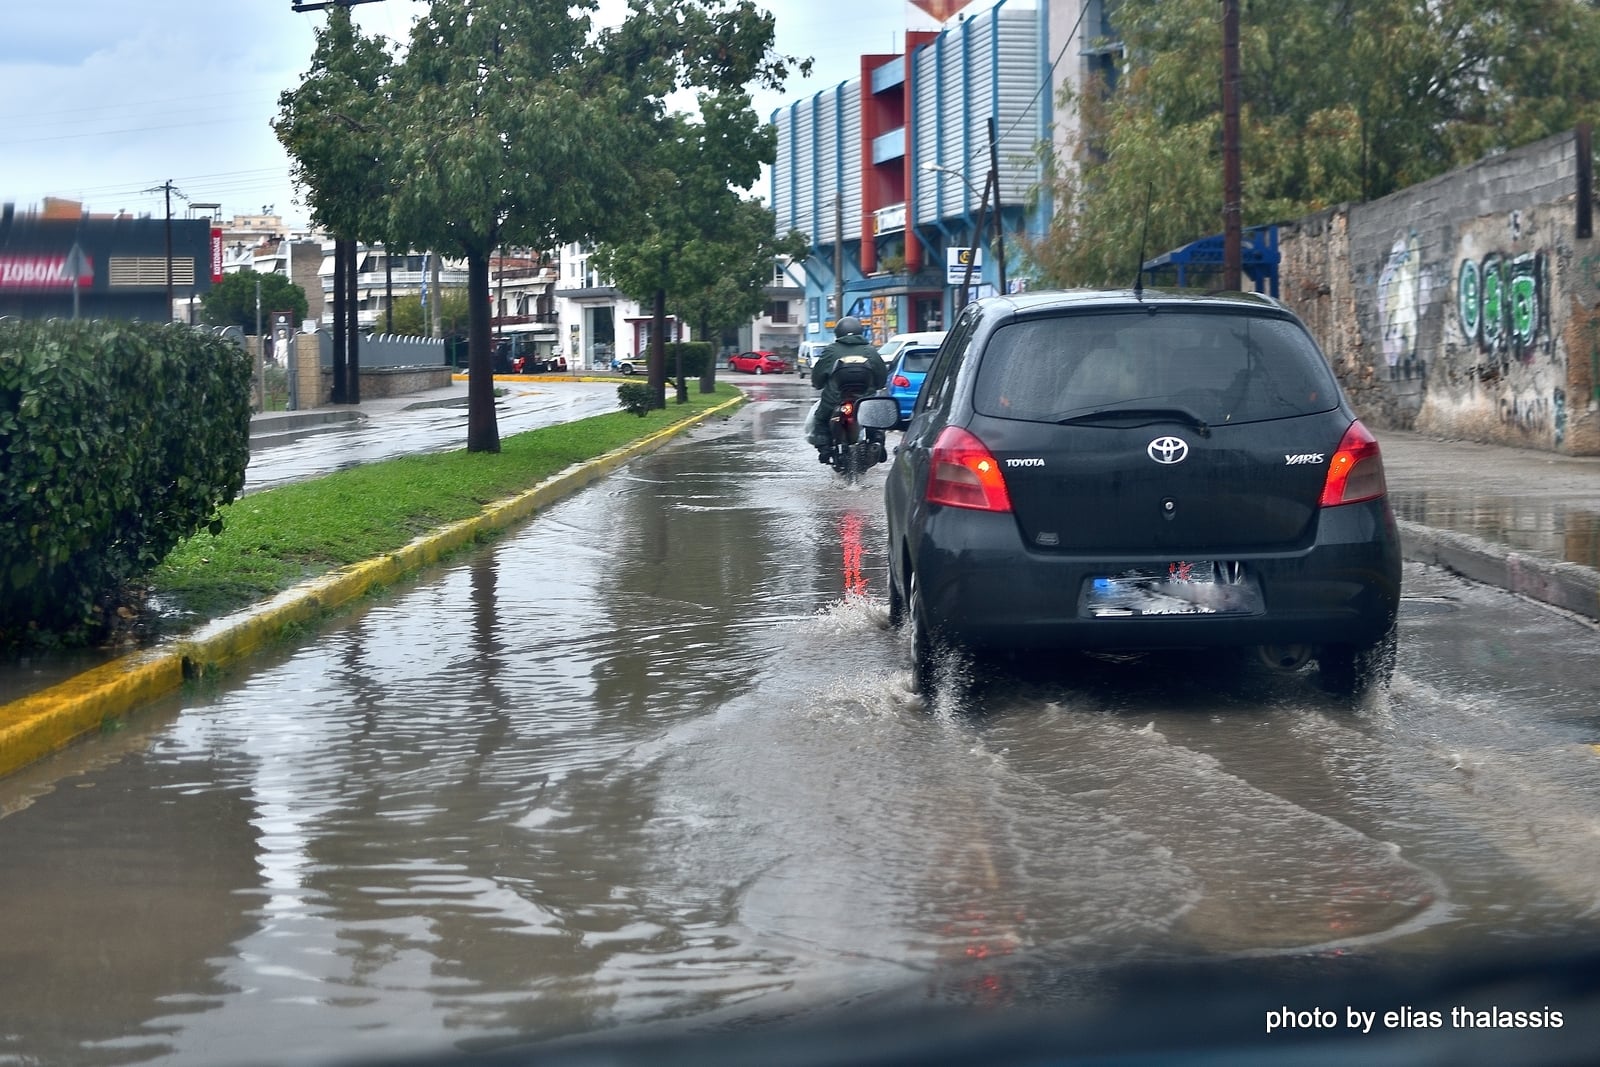 Εύβοια Χαλκίδα: Σε λίμνη μετατράπηκαν δρόμοι από την βροχή – Προσοχή στα διερχόμενα αυτοκίνητα [εικόνα]